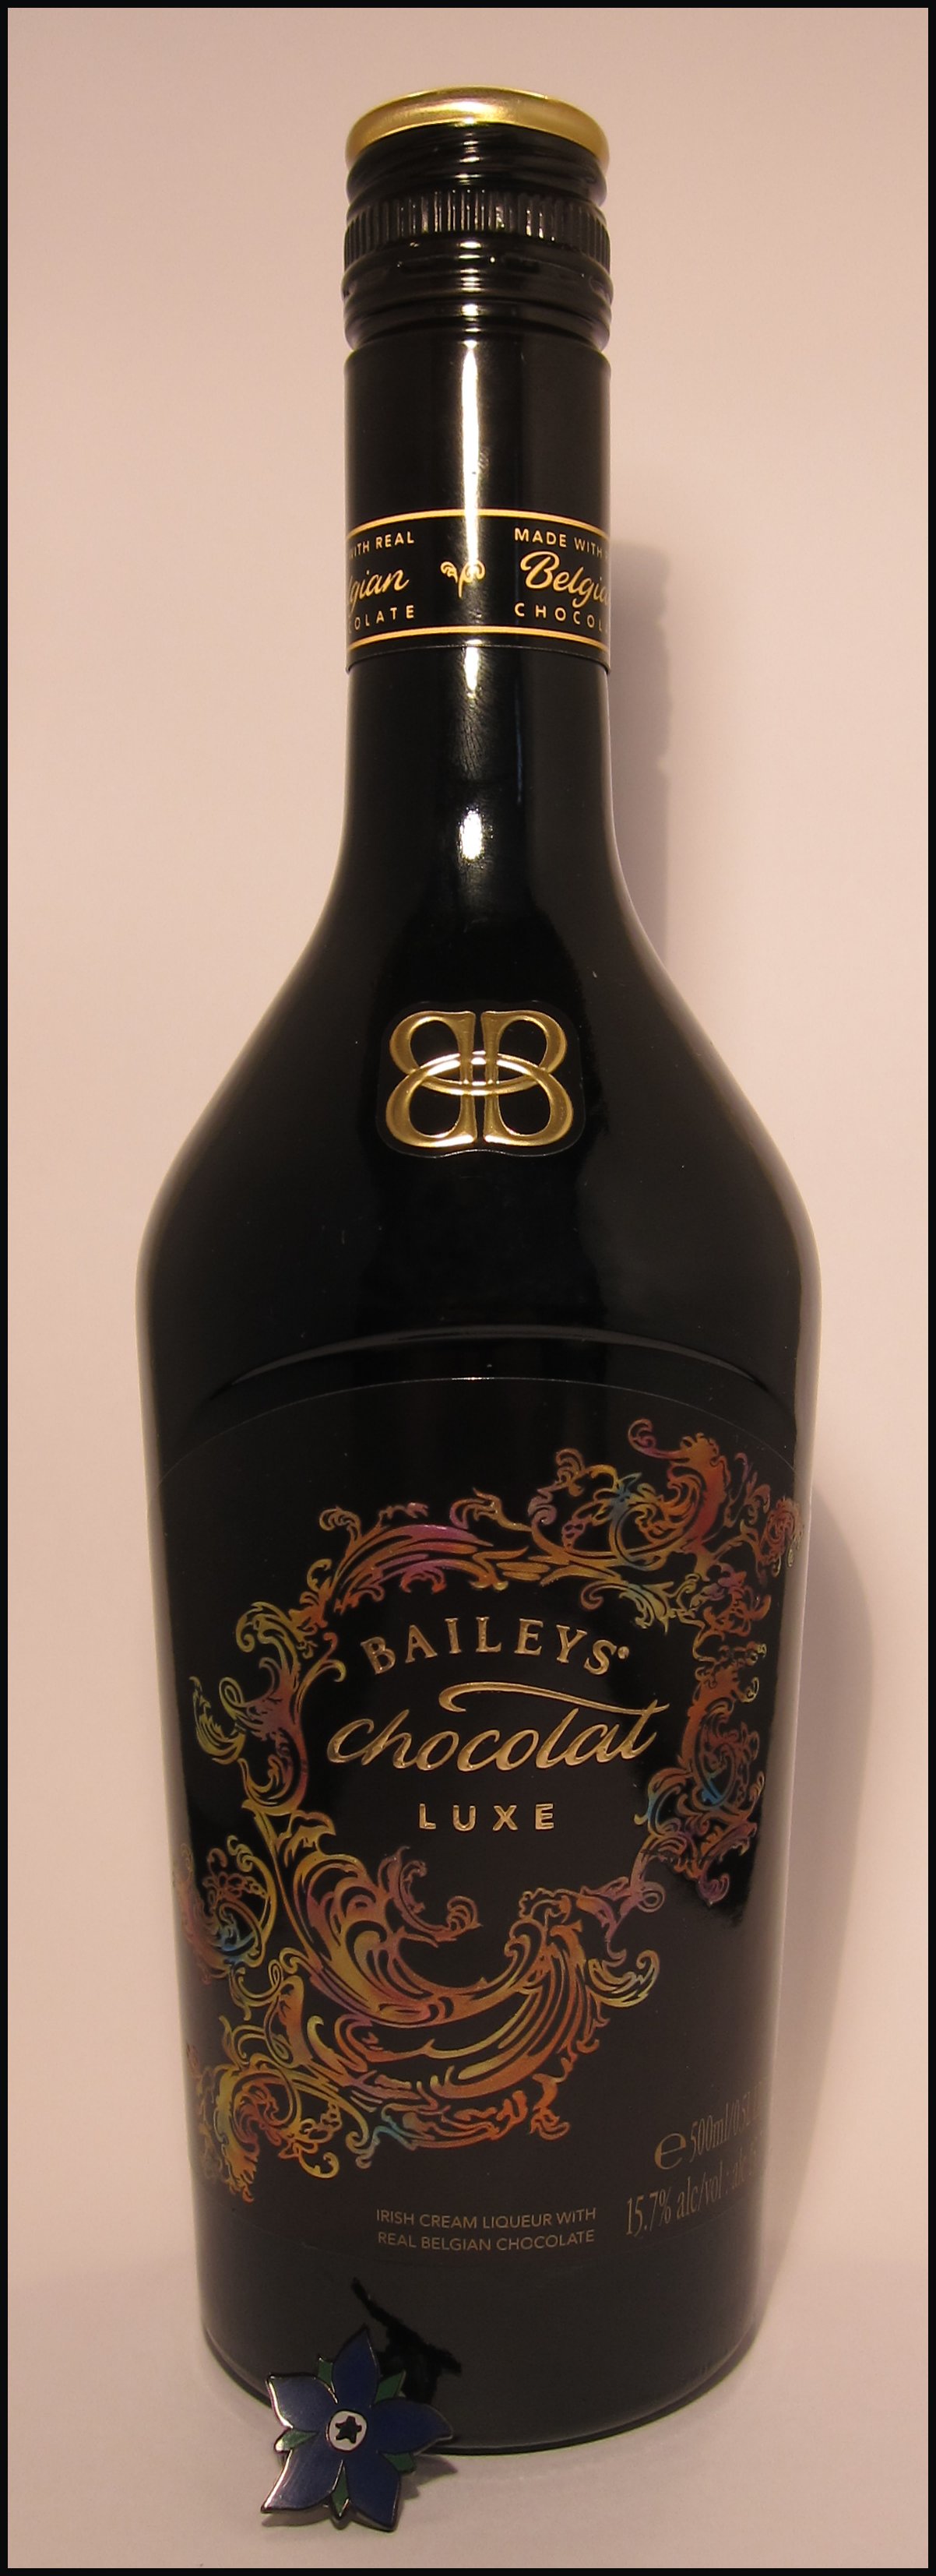 BUY] Baileys Chocolat Luxe Liqueur